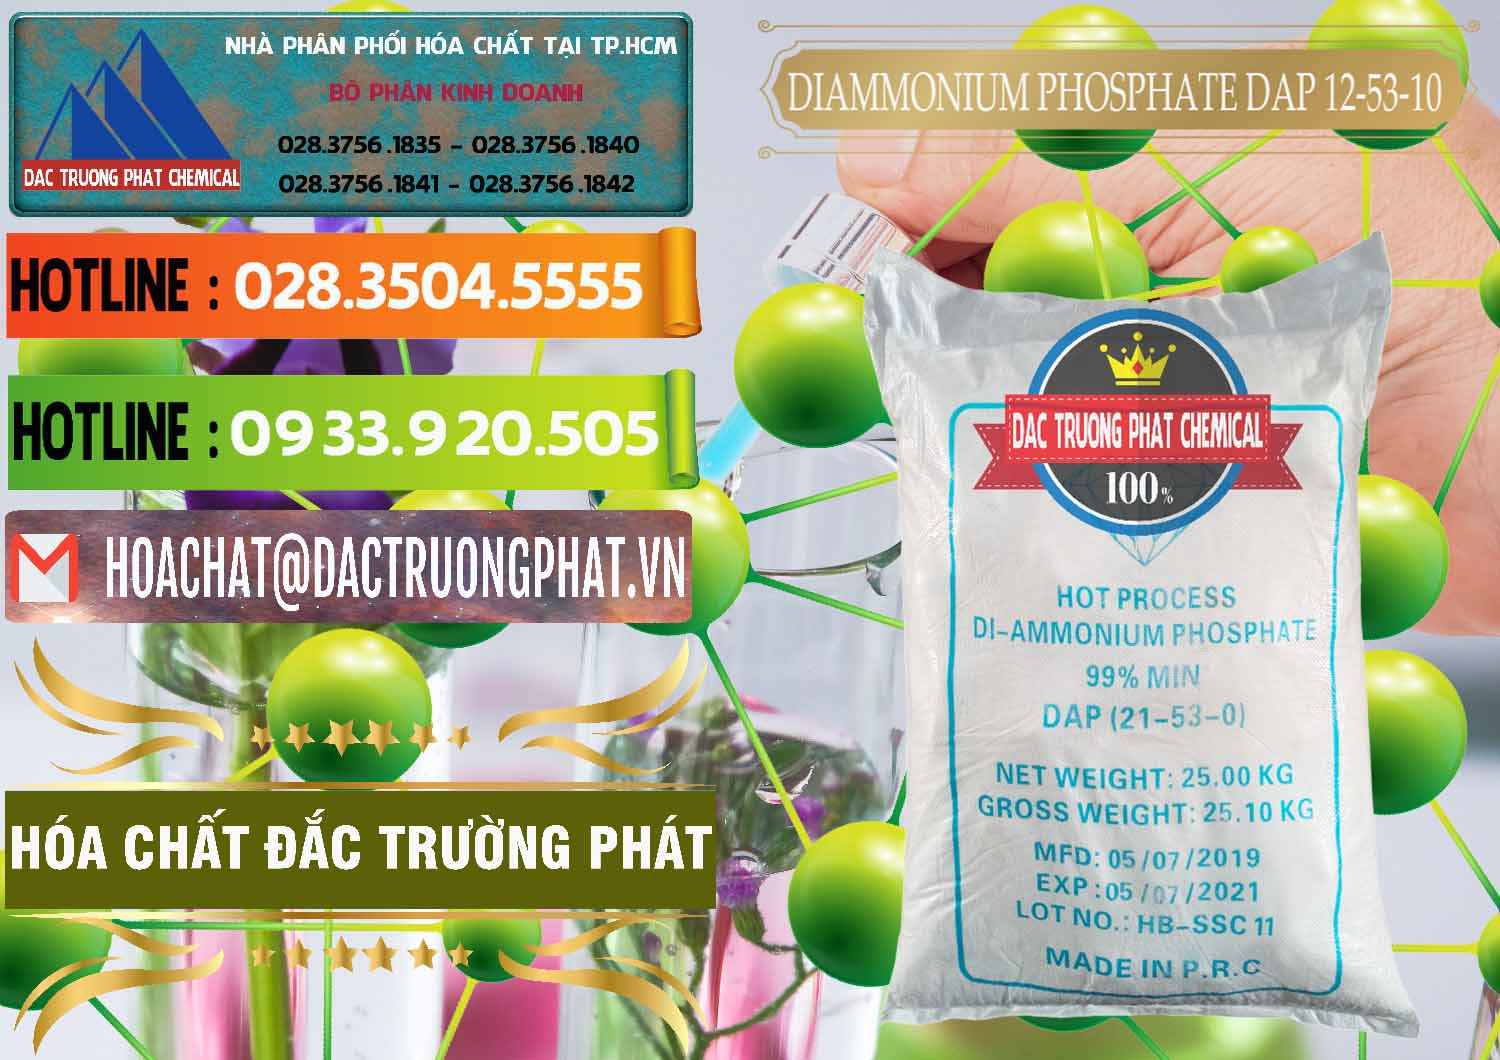 Cty chuyên nhập khẩu & bán DAP - Diammonium Phosphate Trung Quốc China - 0319 - Công ty cung cấp và nhập khẩu hóa chất tại TP.HCM - cungcaphoachat.com.vn